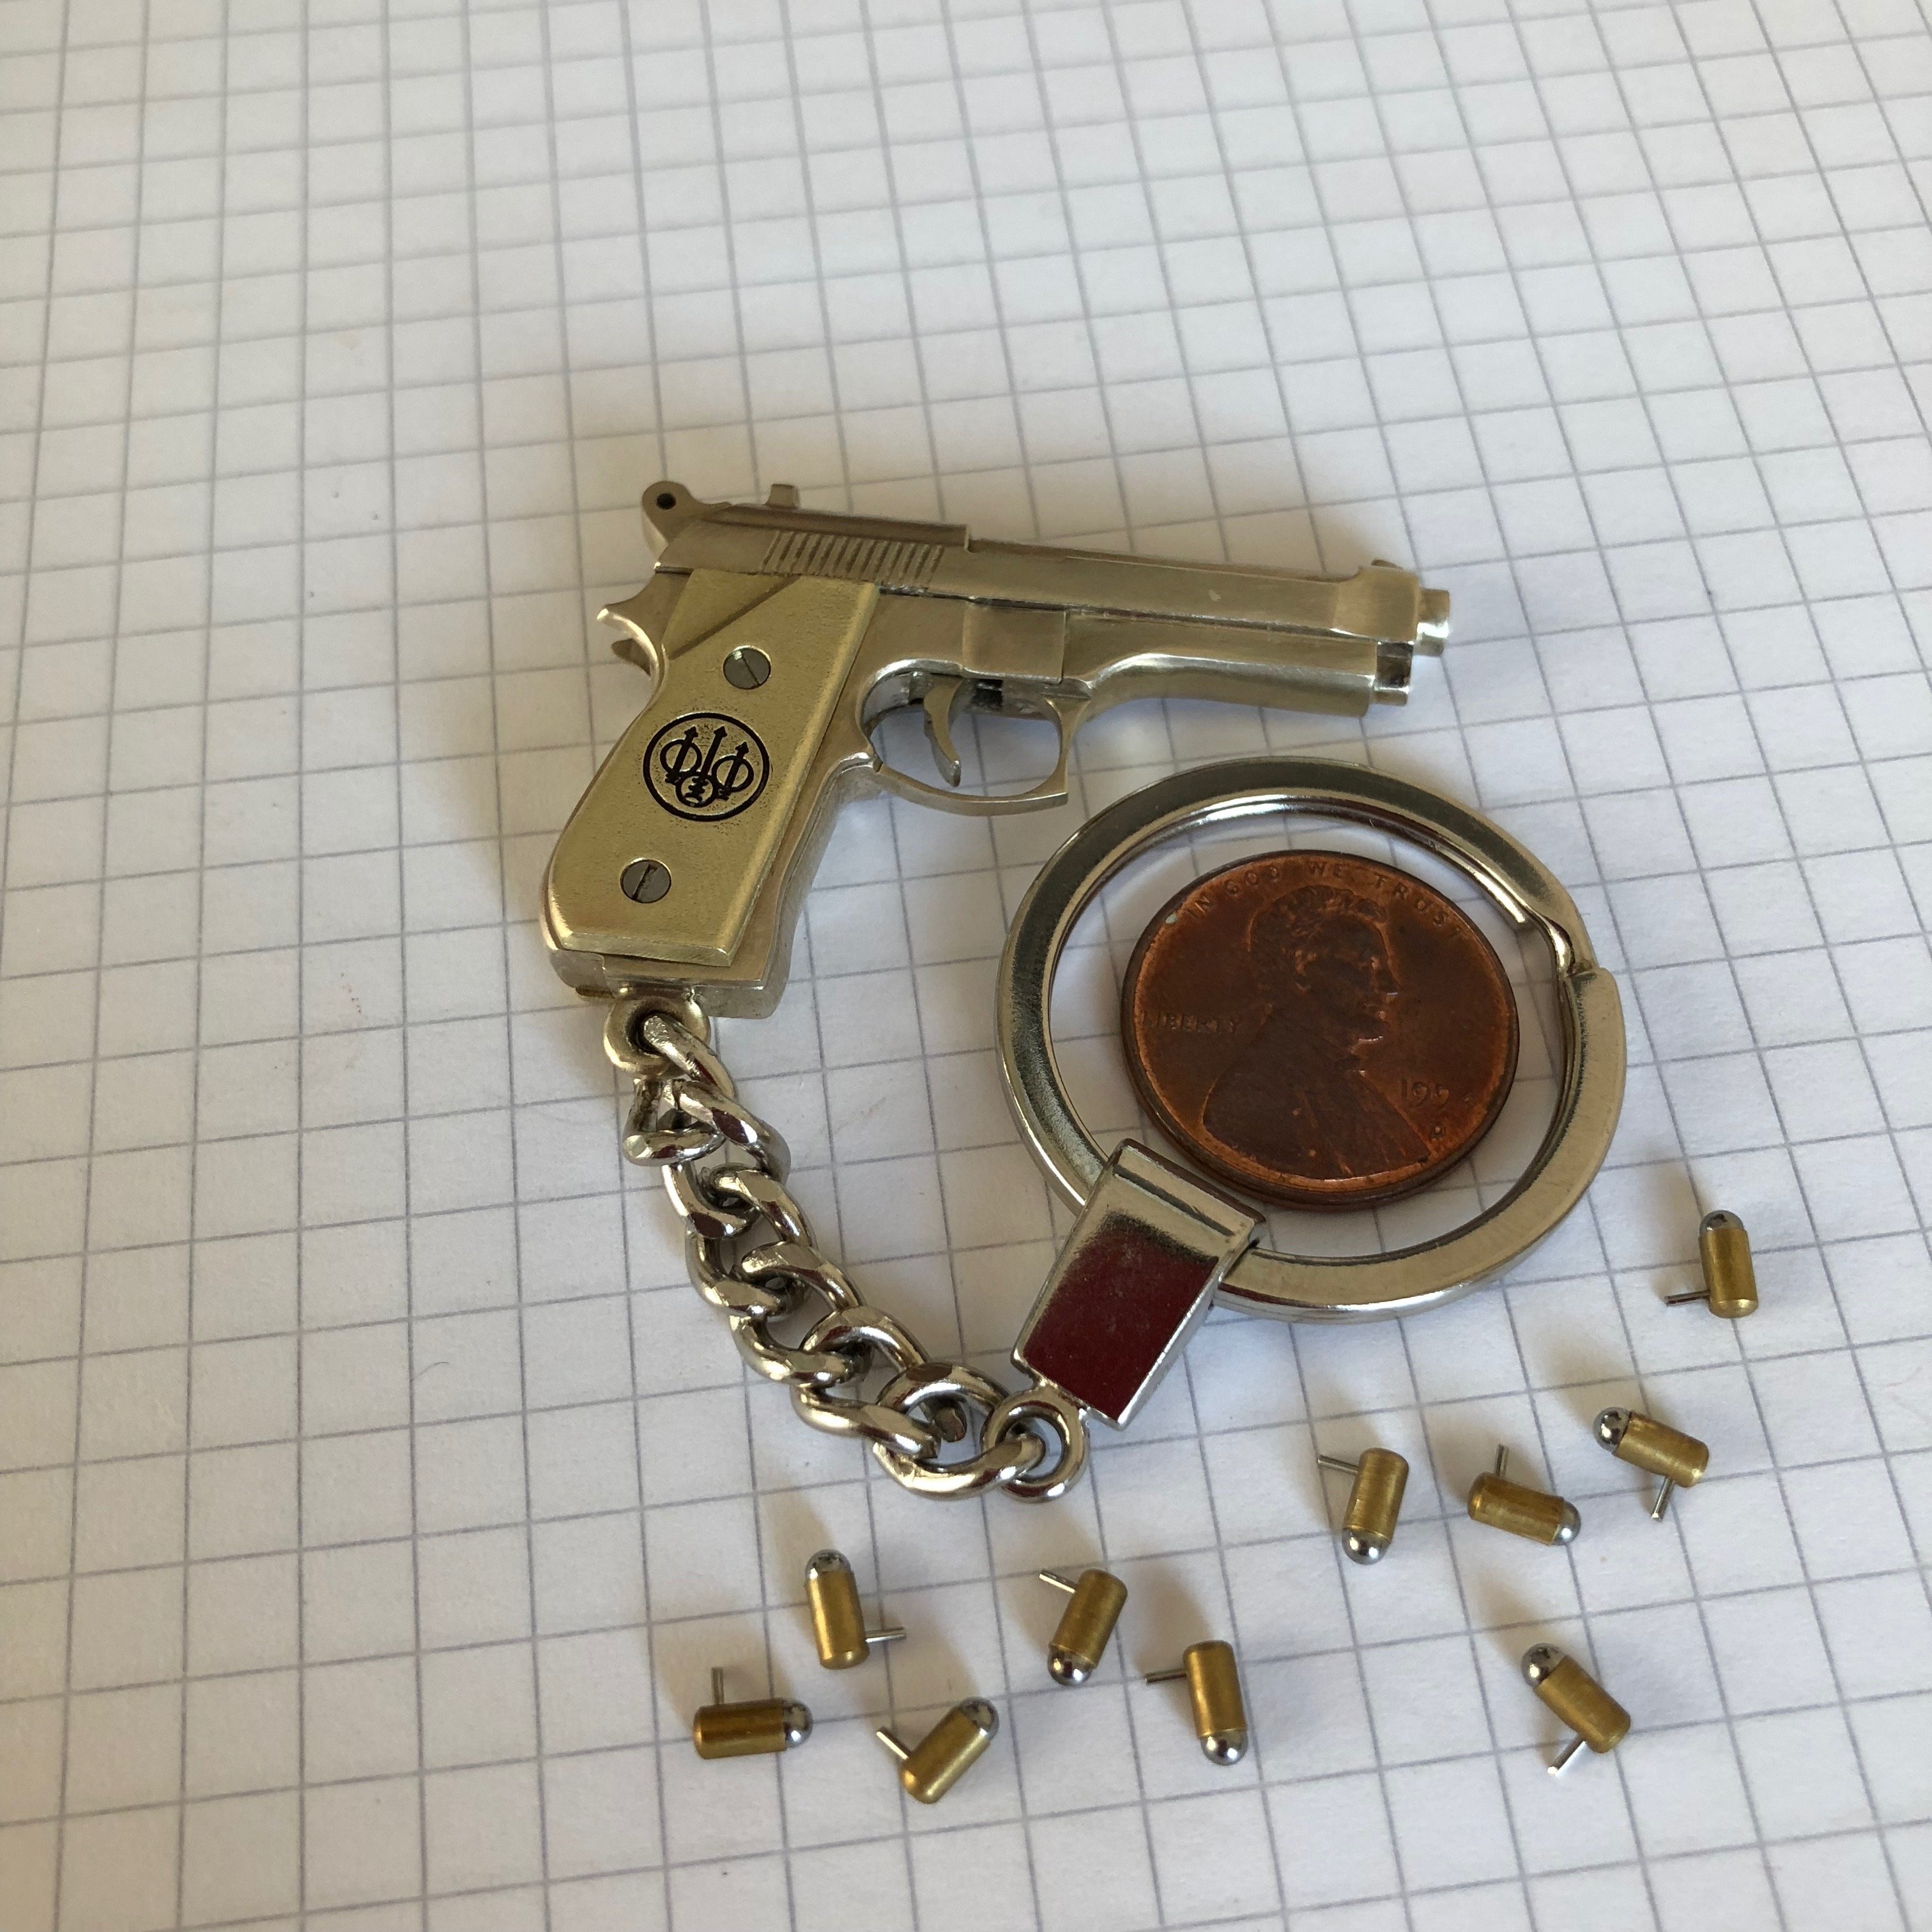 2mm pinfire pistol Beretta